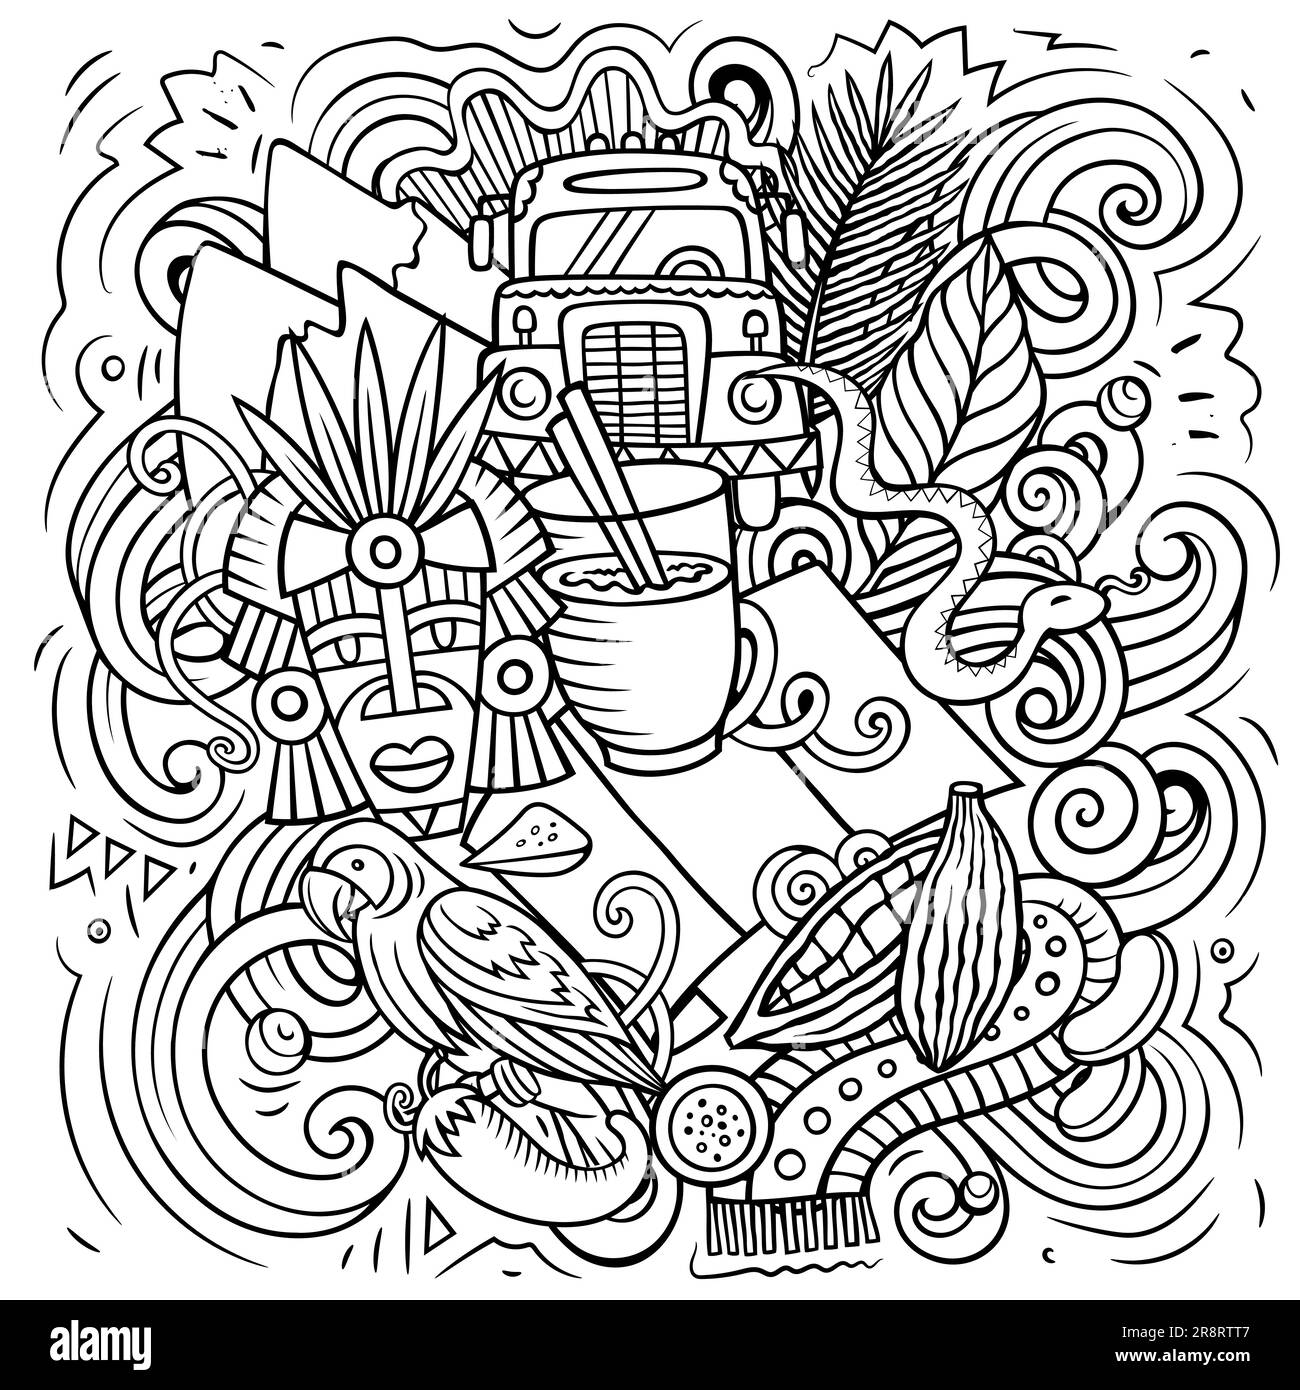 Guatemala-Zeichentrickfilm-Doodle-Illustration. Komisches Design. Kreativer Vektorhintergrund mit zentralamerikanischen Landeselementen und Objekten. Skizzierte Komposition Stock Vektor